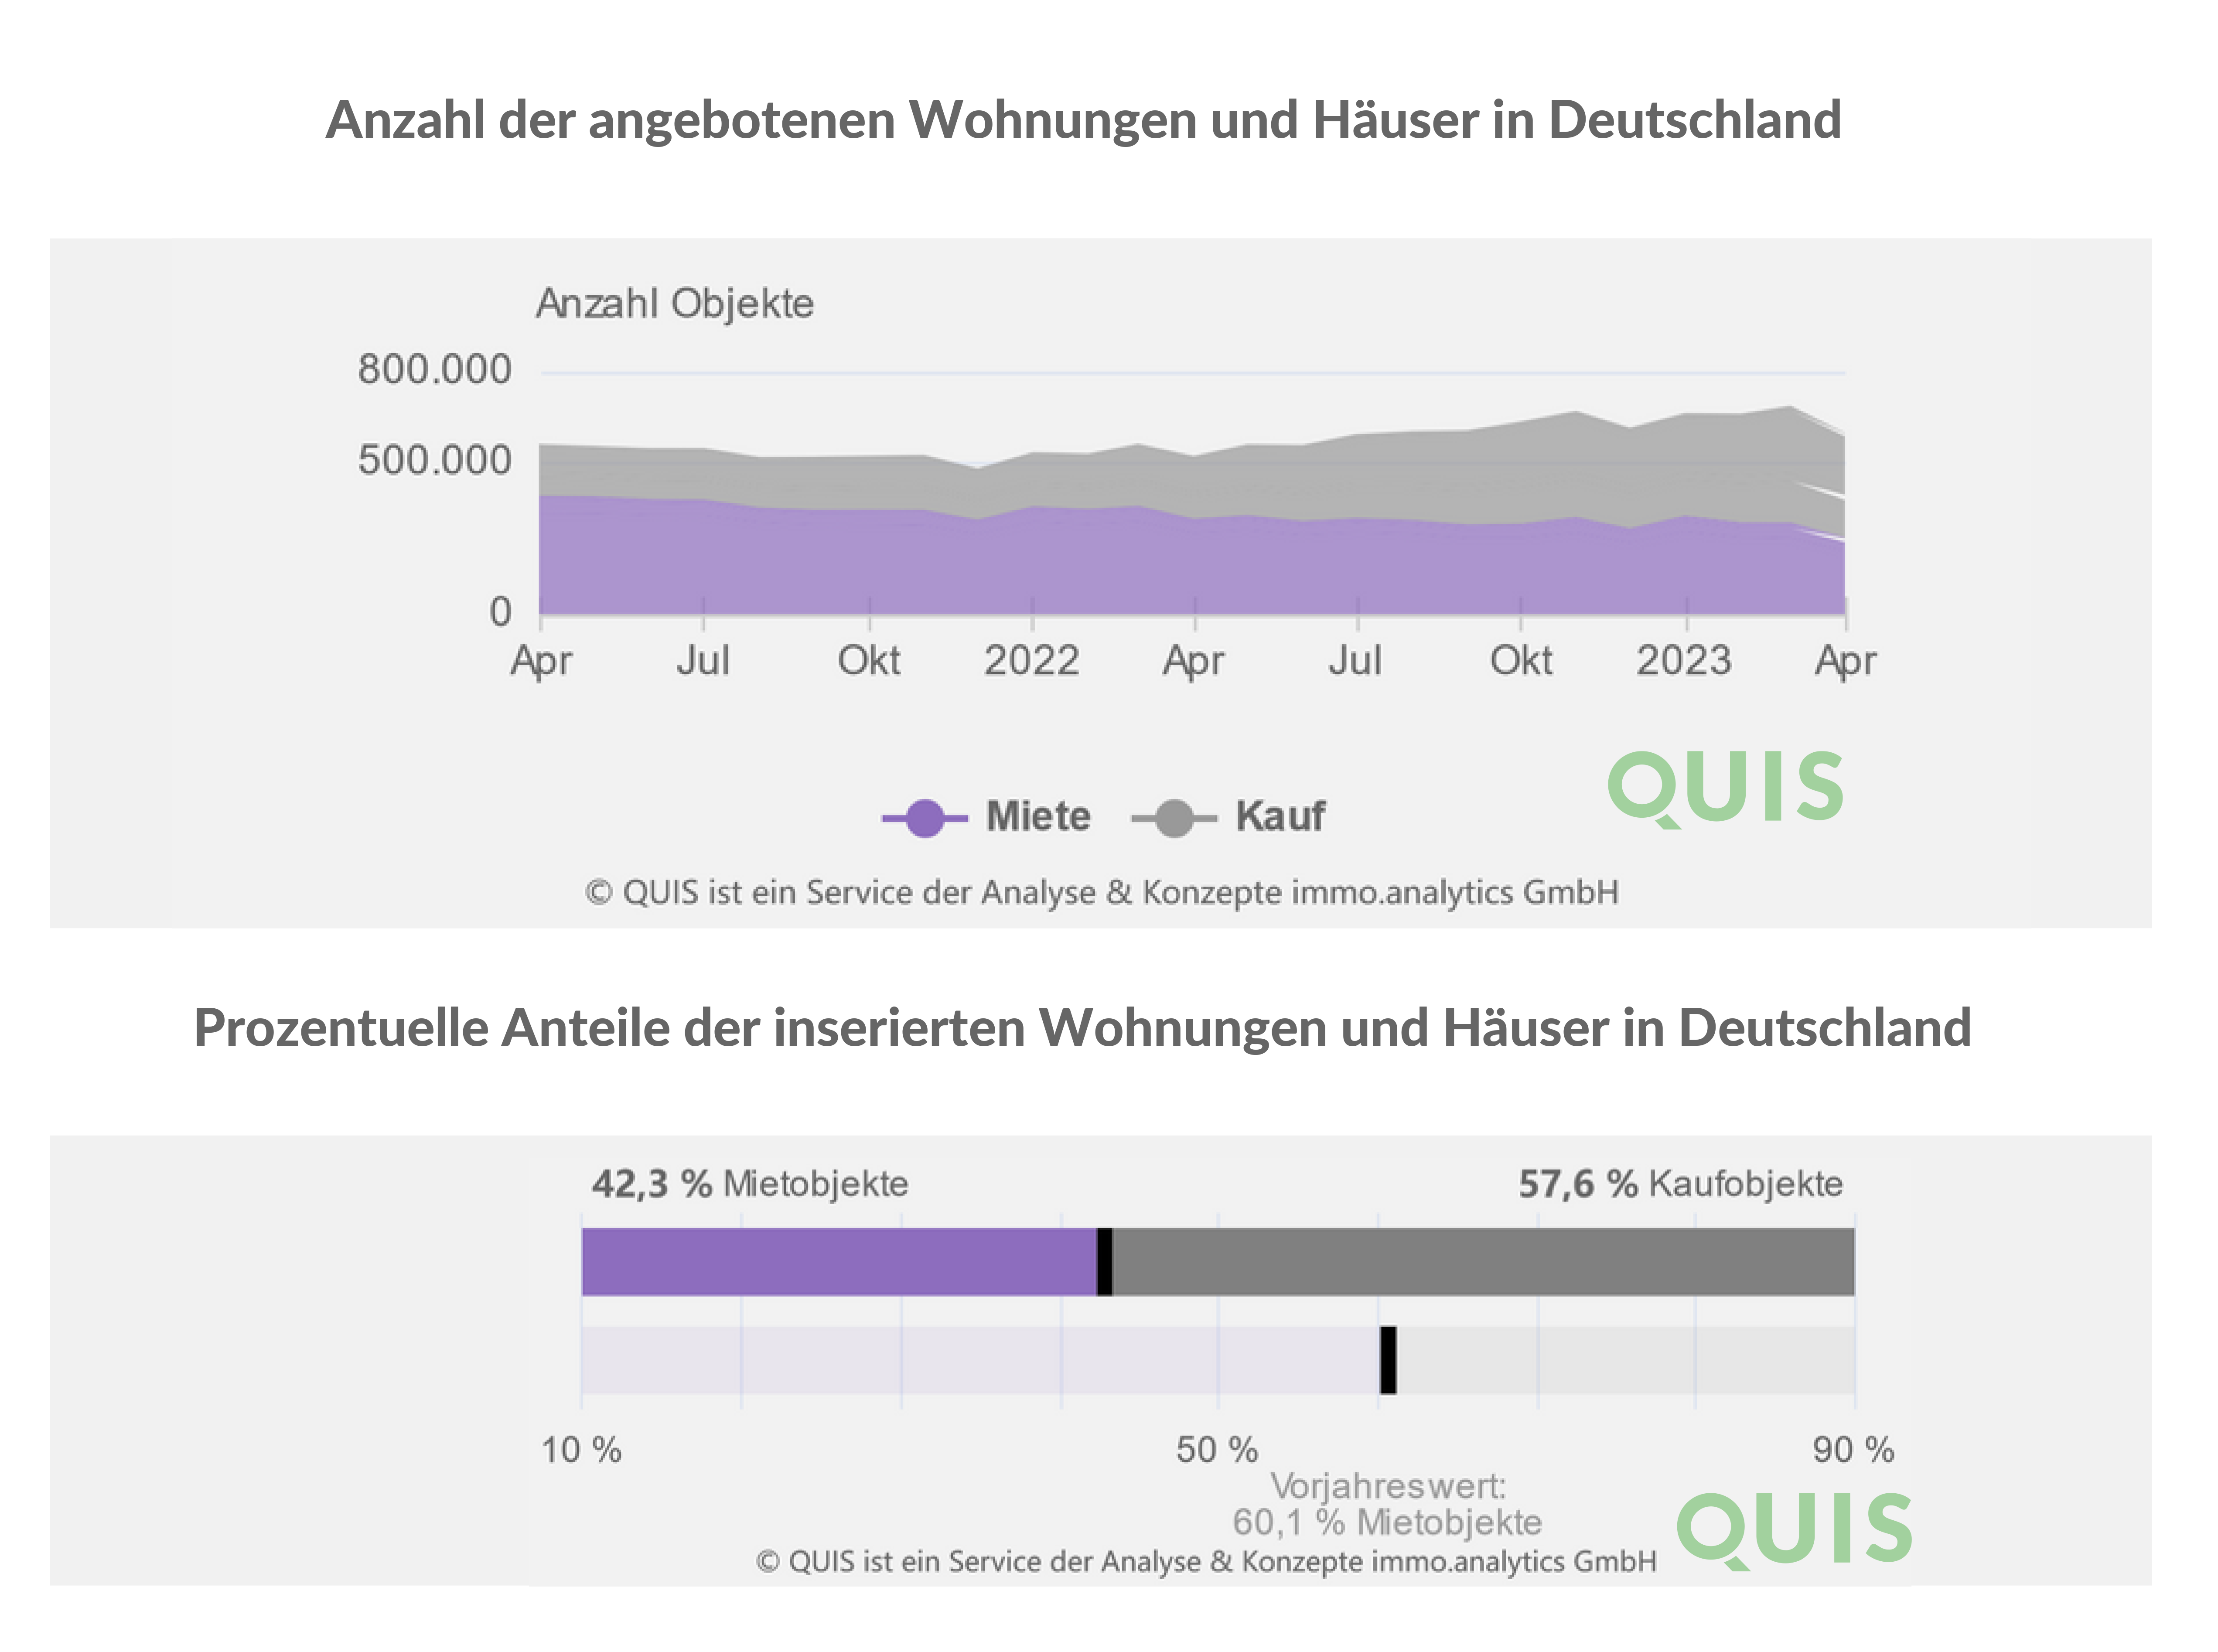 Diagramm der Vermittlung von Häusern zur Miete und zum Kauf in Deutschland. Monat im Fokus ist April.